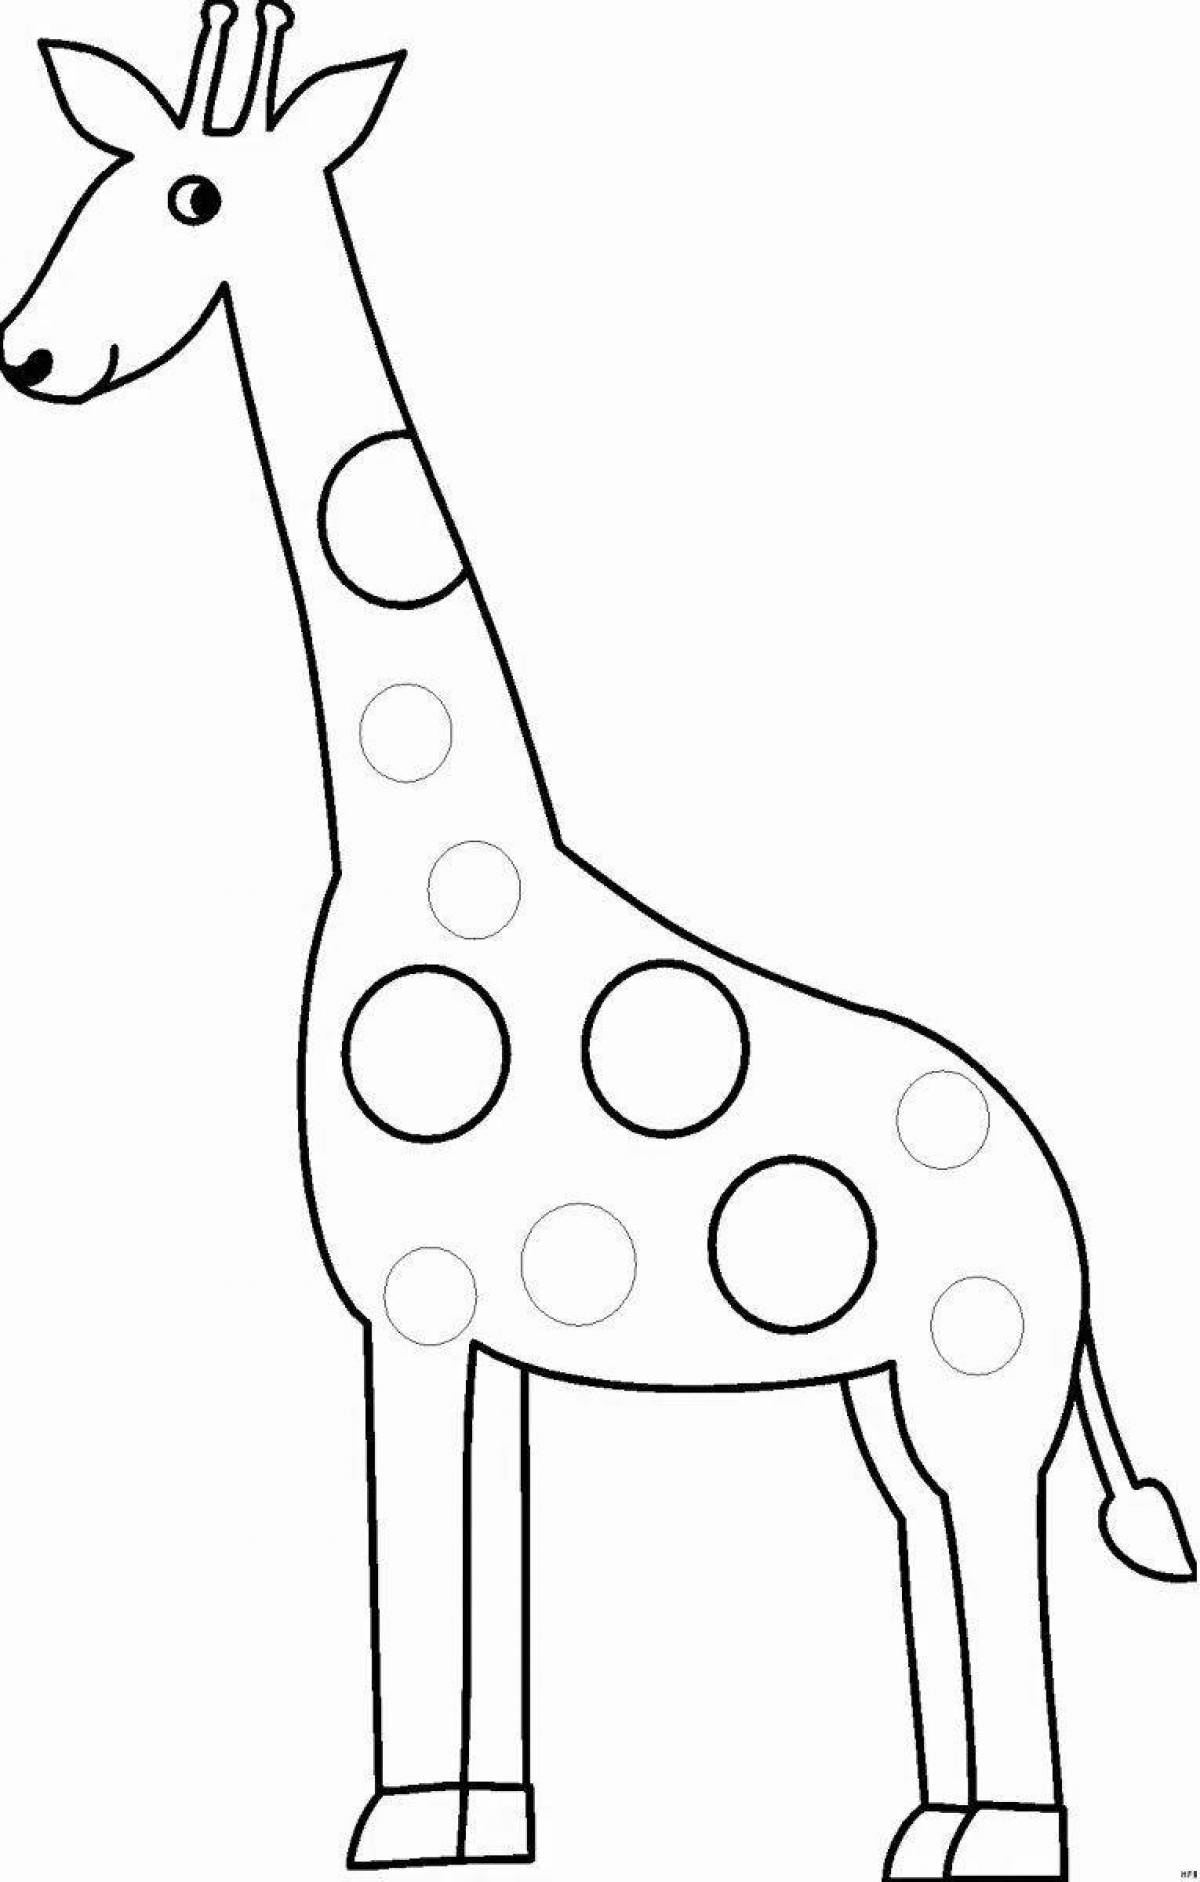 Fun coloring giraffe